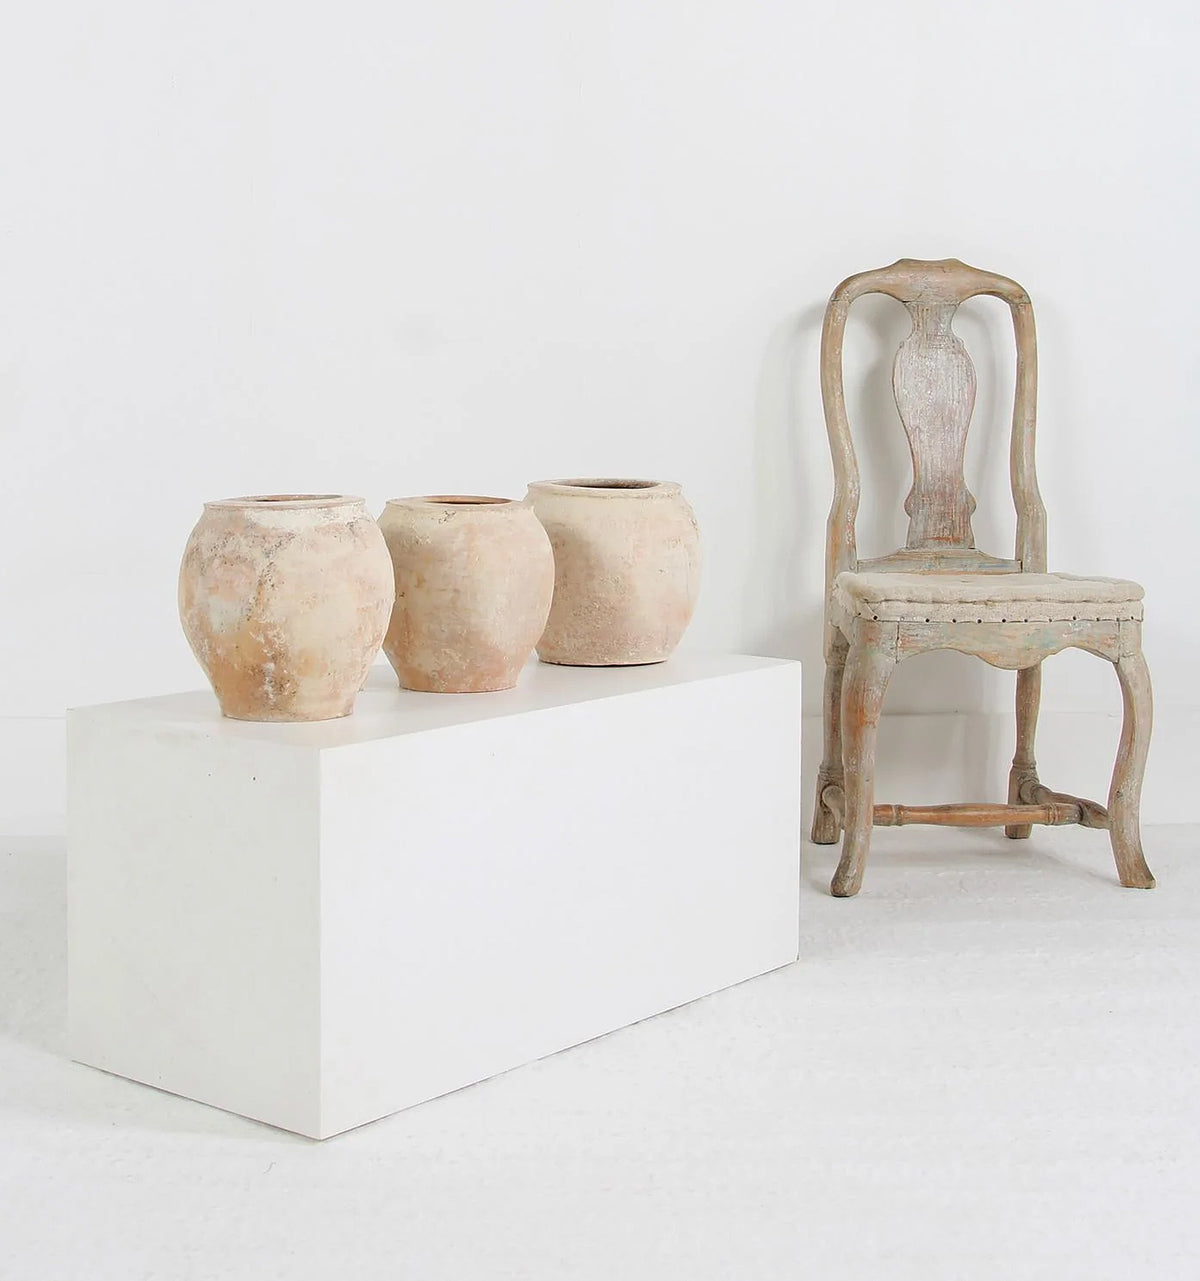 Collection of three terracotta Mediterranean storage jars